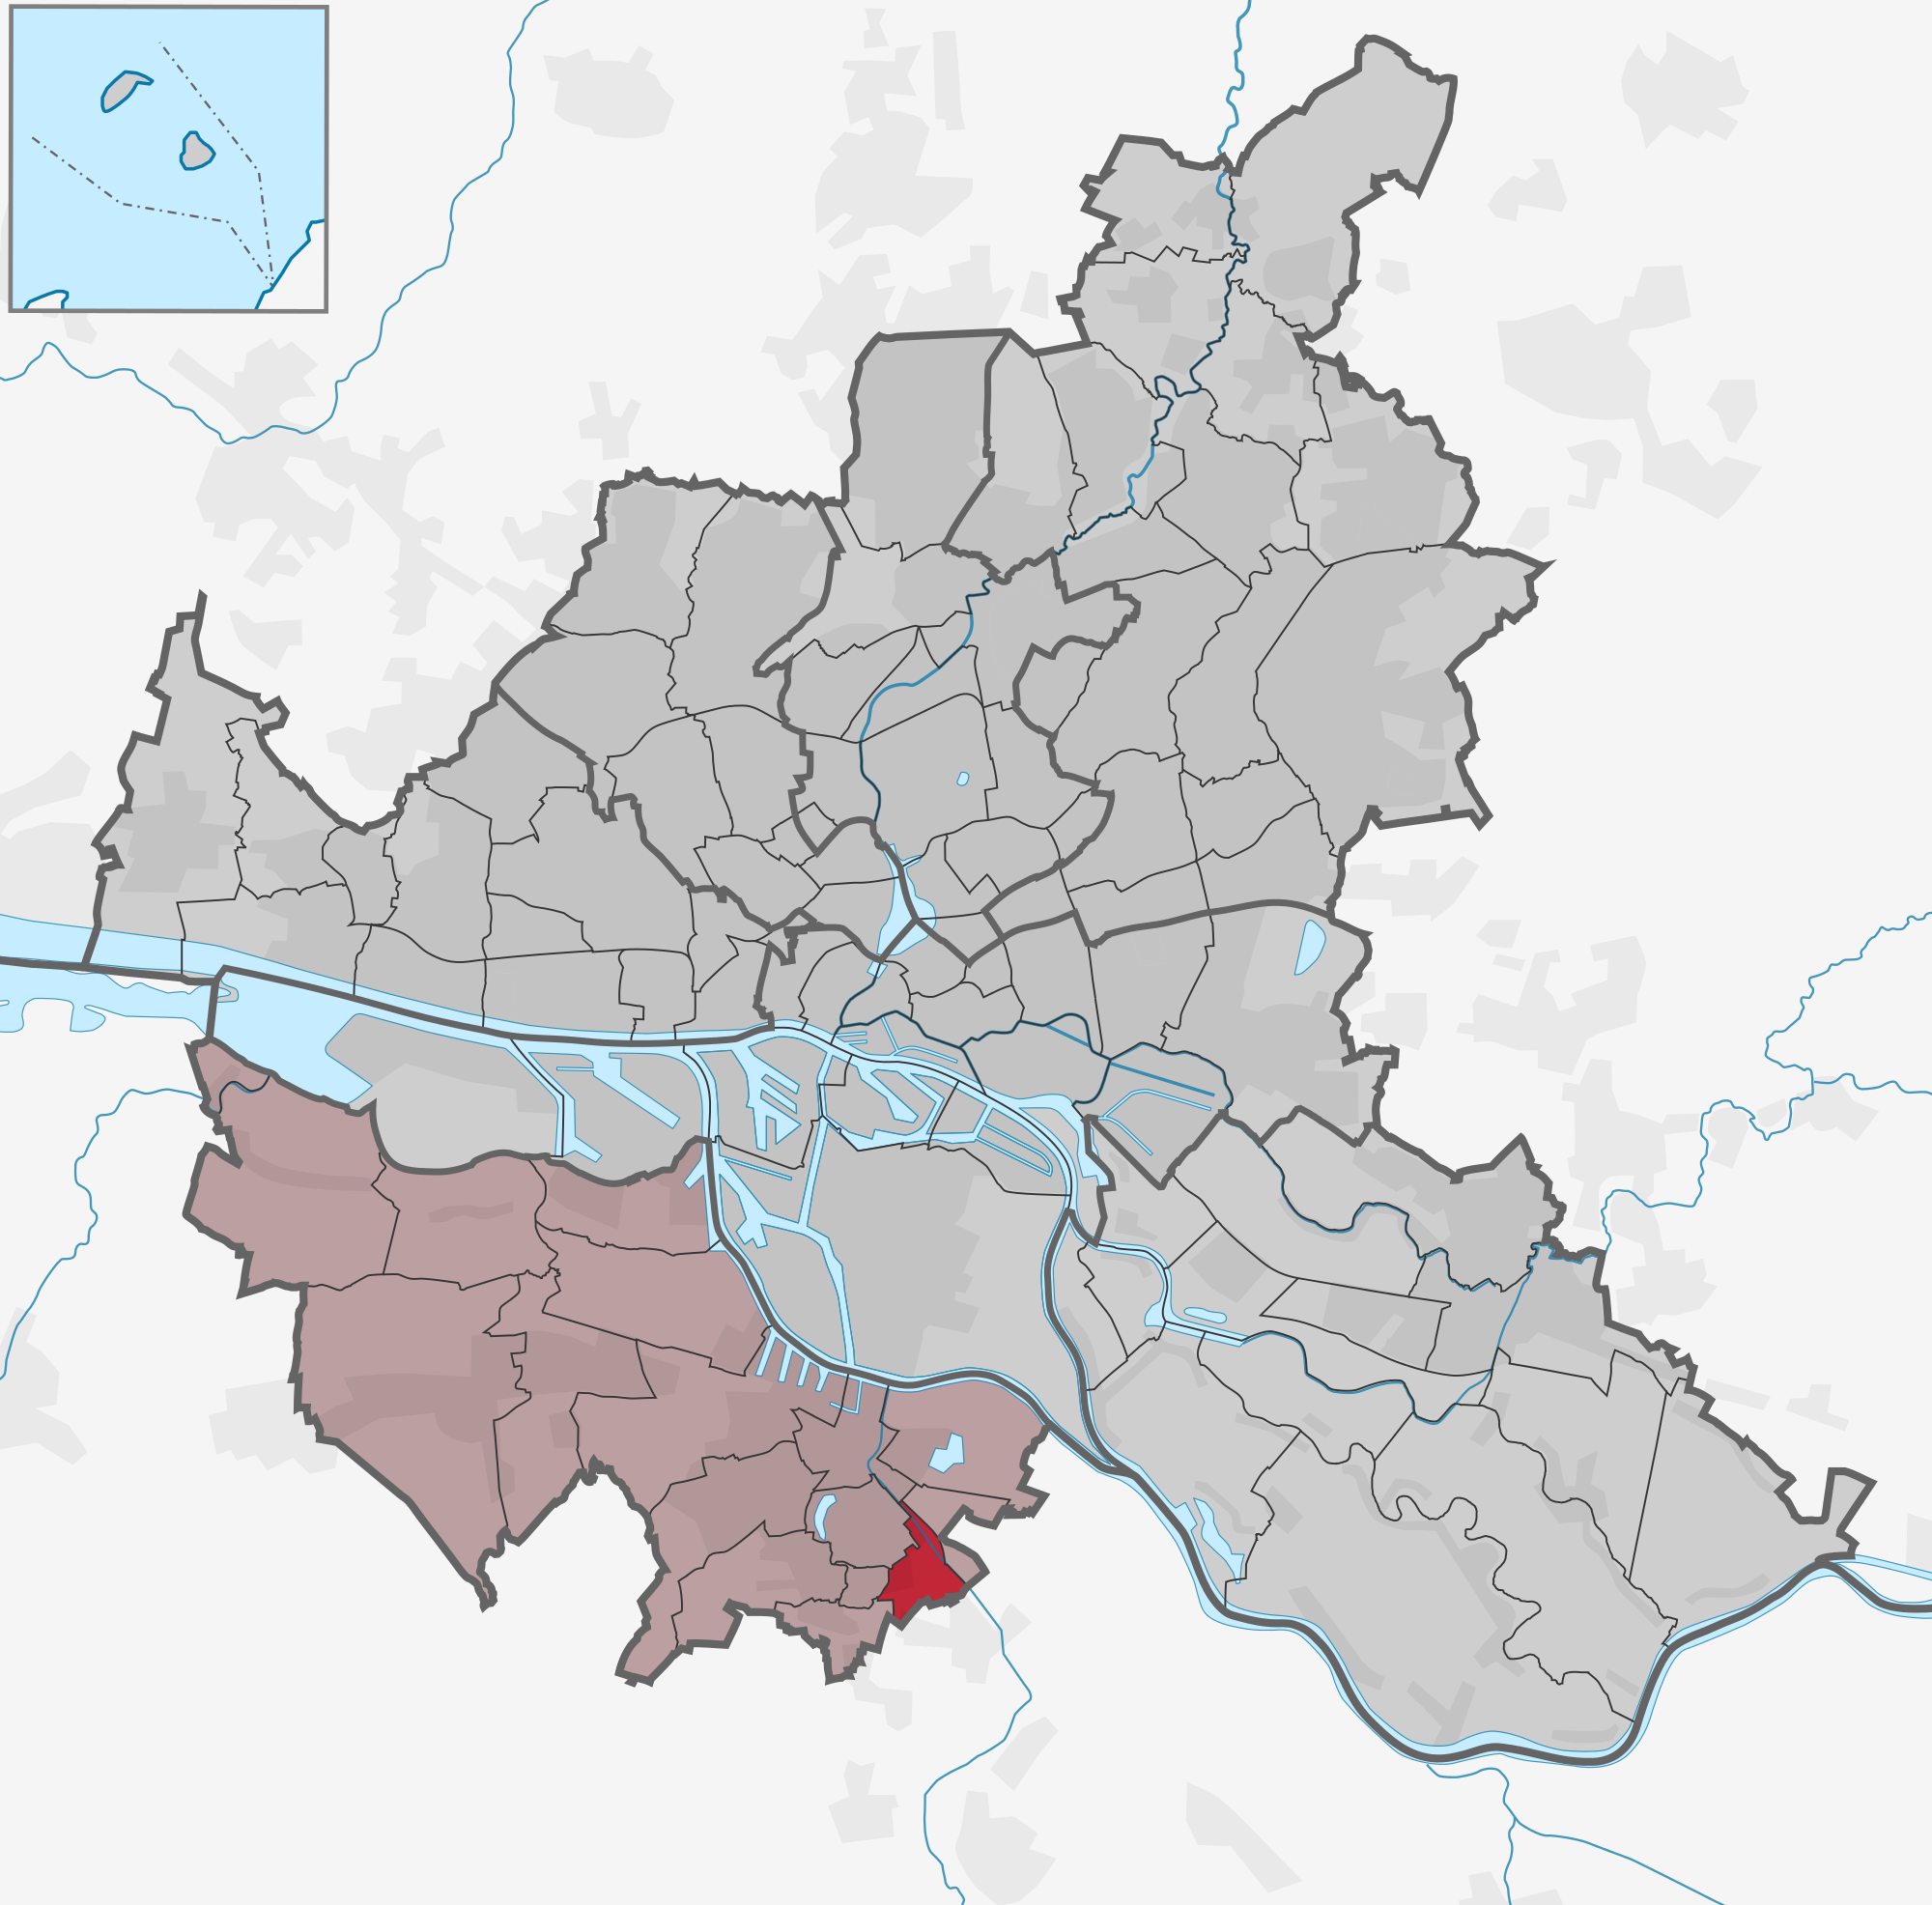 Stadtteil Rönneburg (Bezirk Harburg)